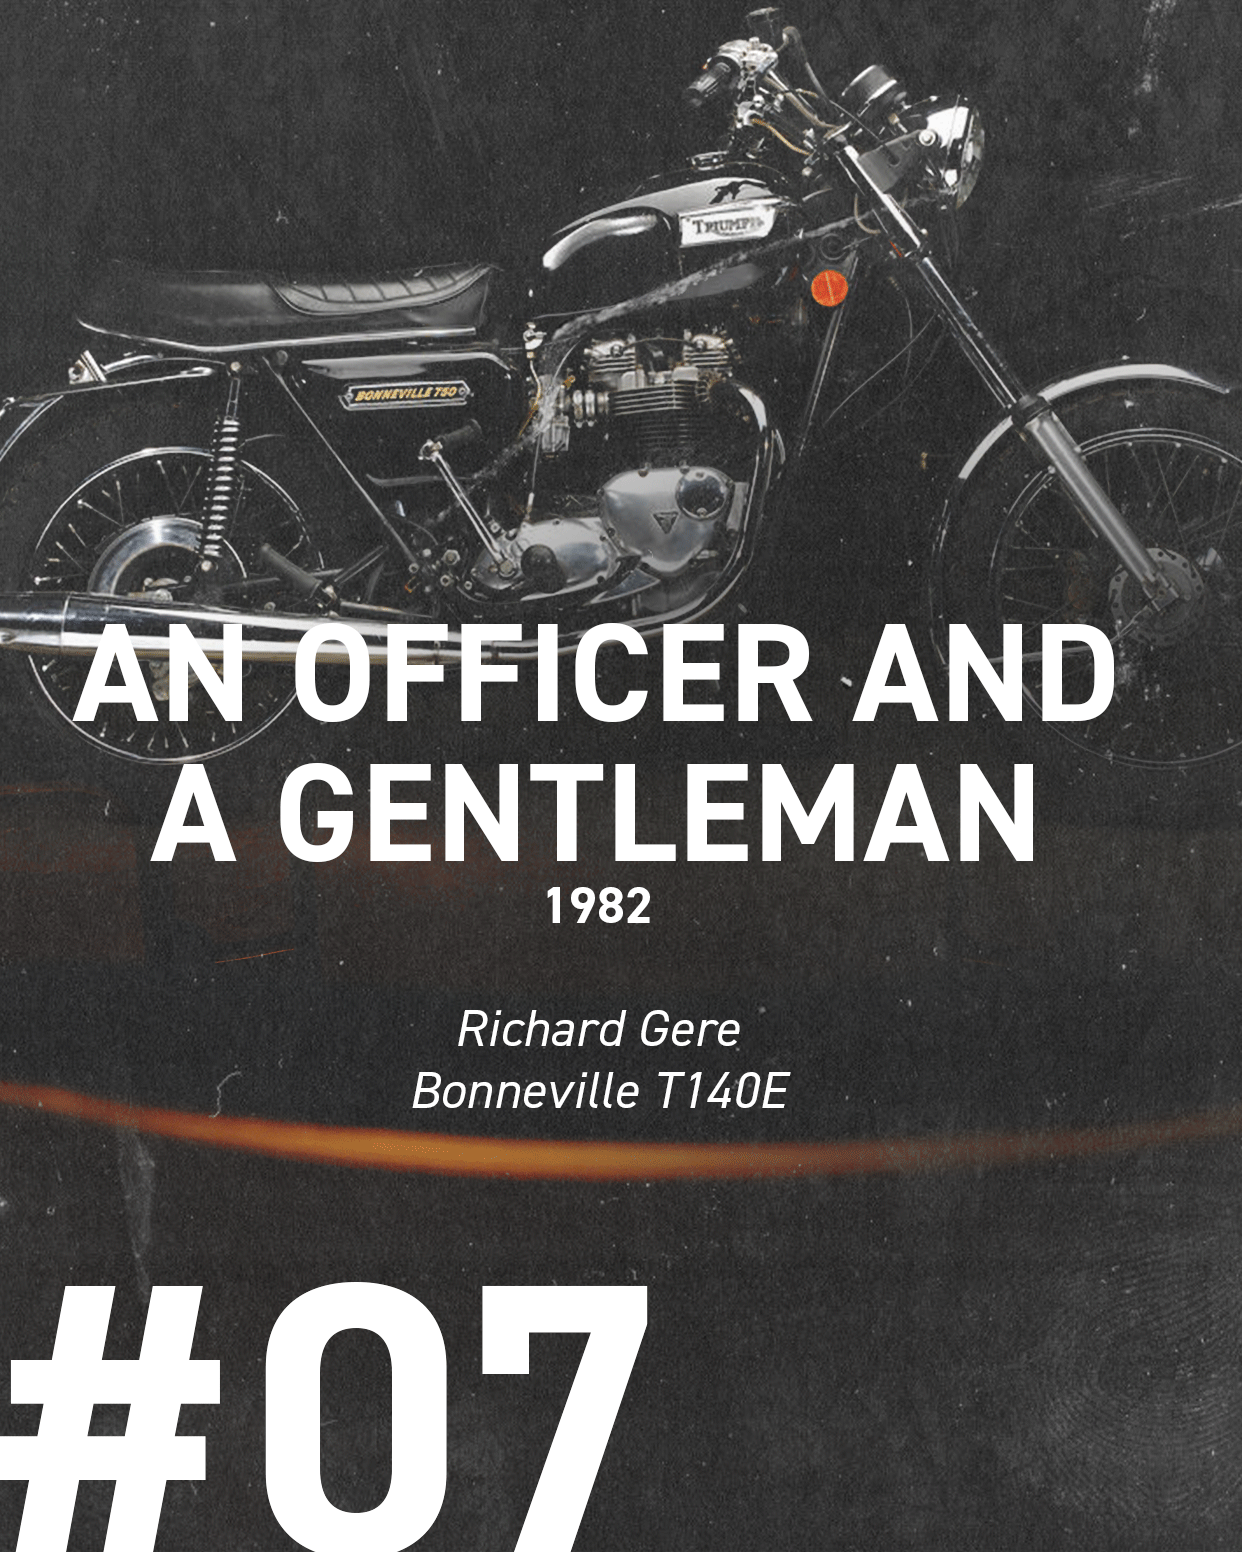 An officer and a gentleman 